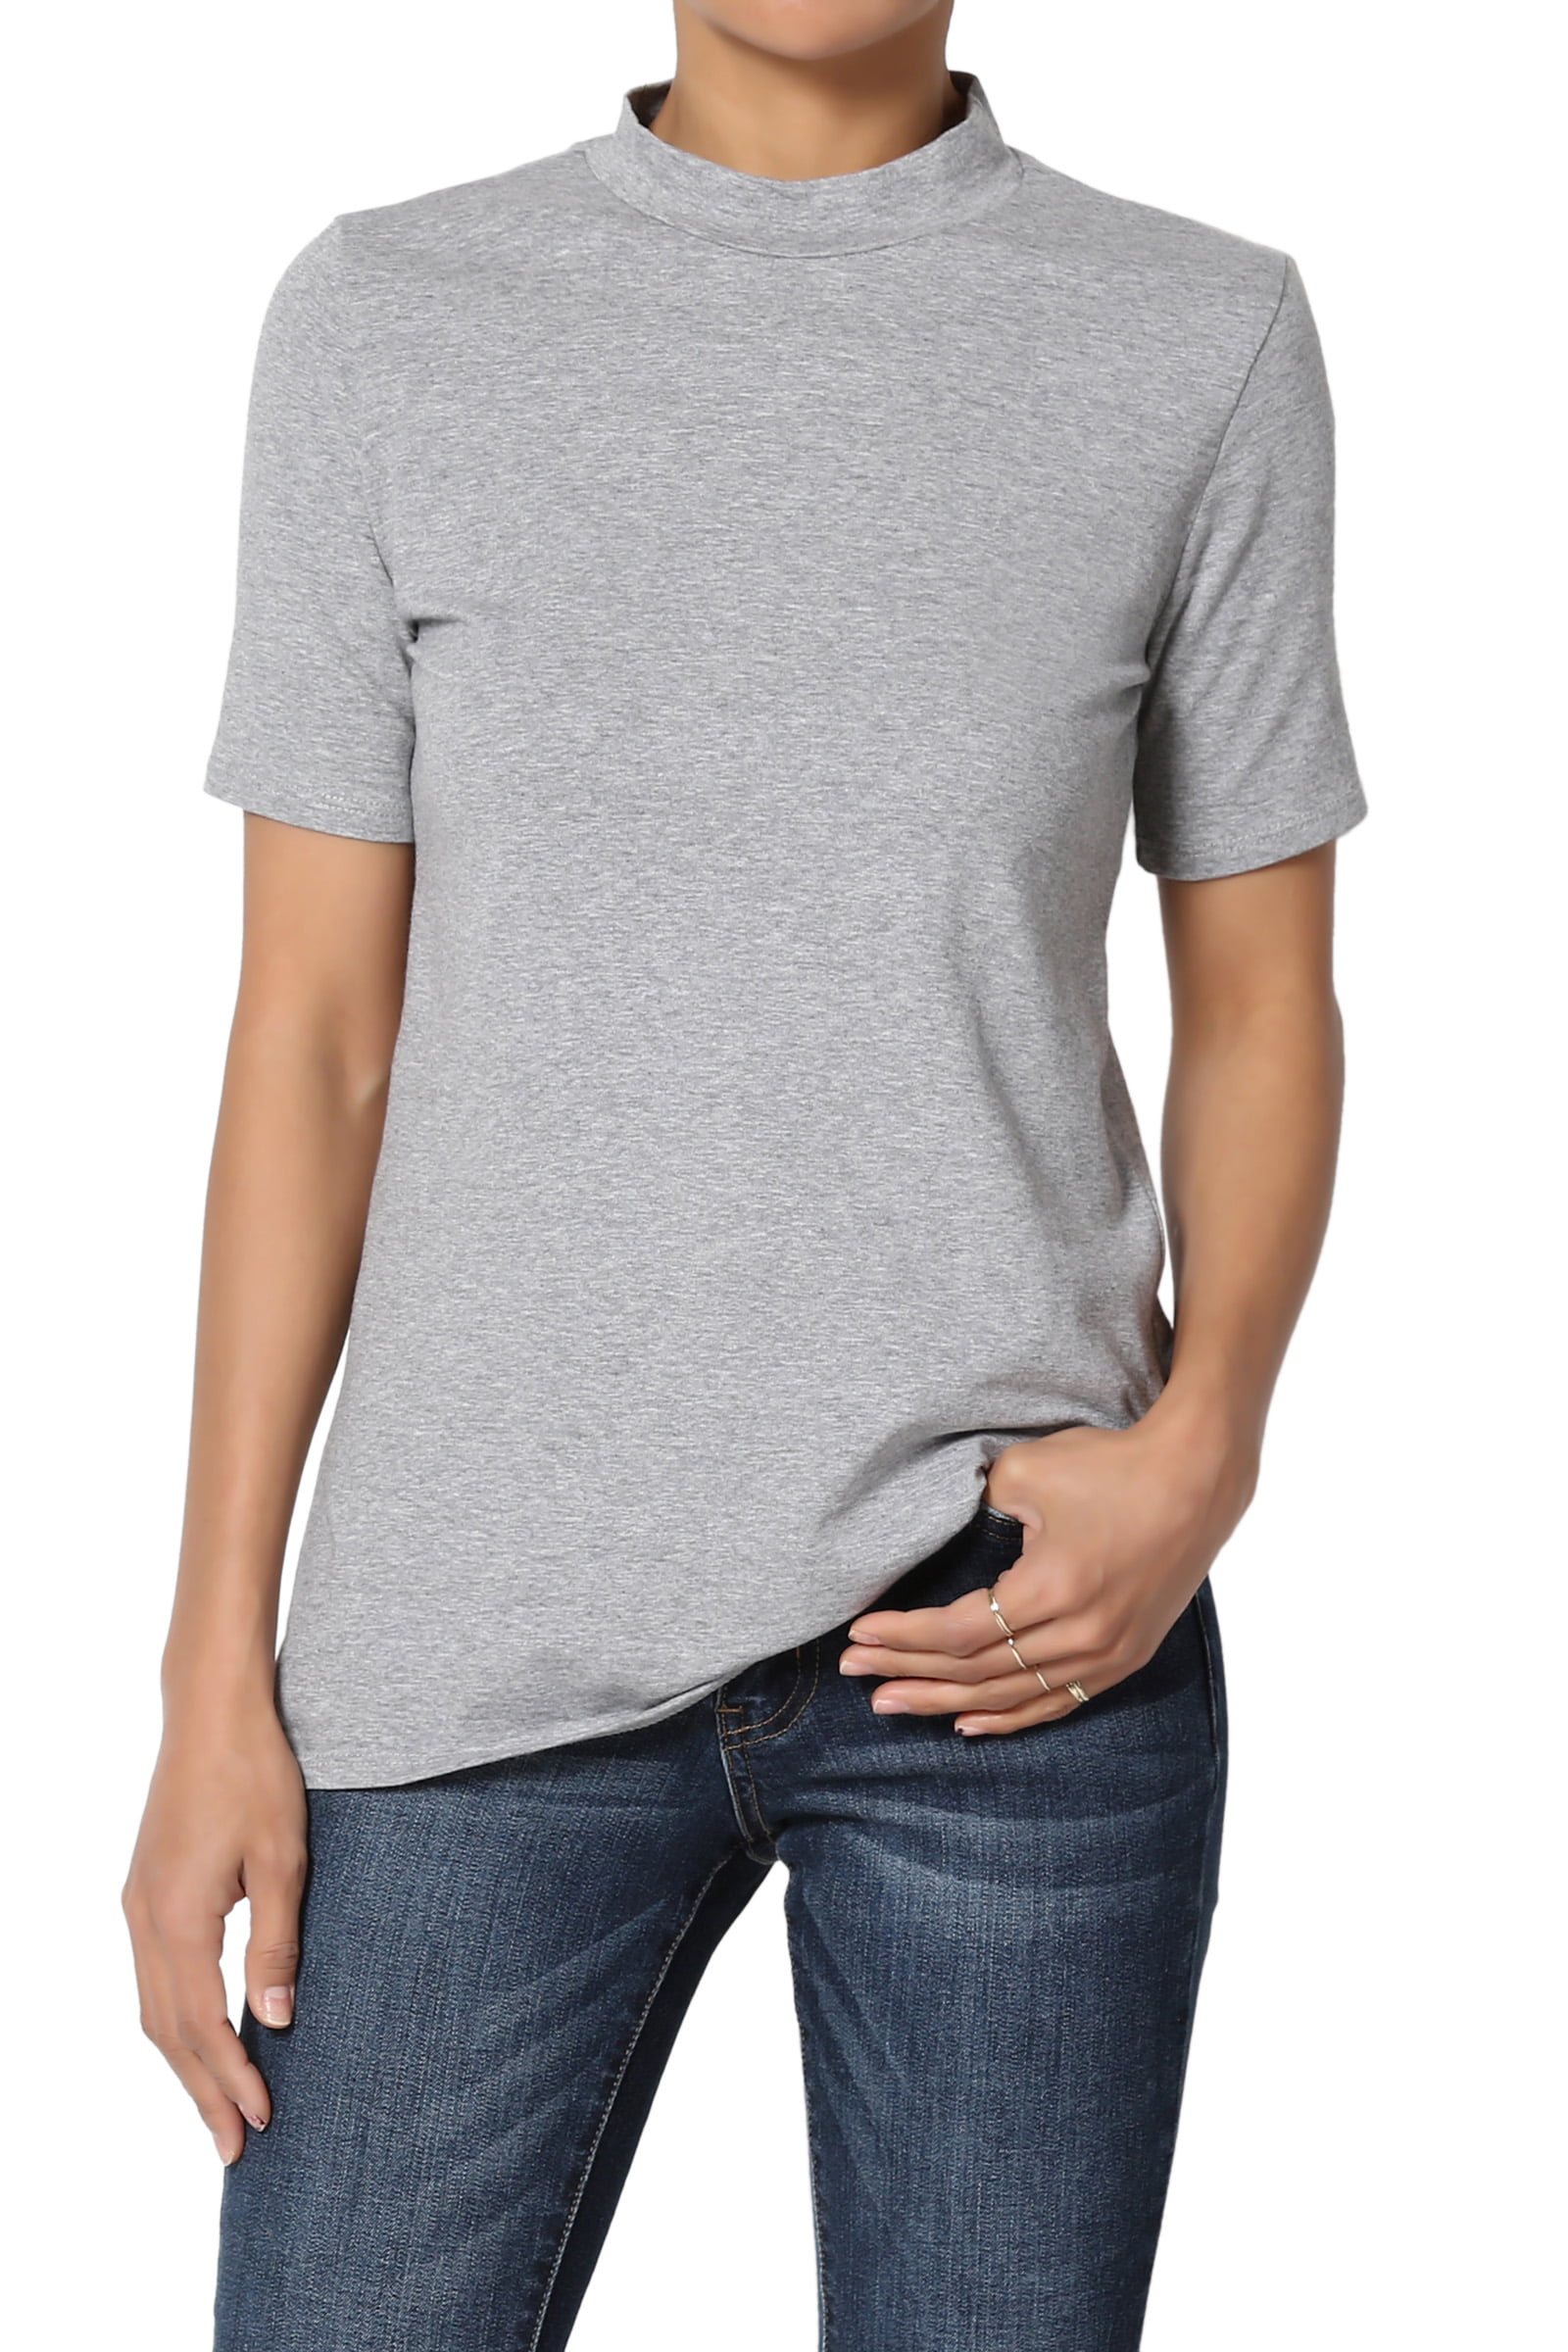 TheMogan - TheMogan Junior's S~XL Mock Neck Short Sleeve T-Shirt